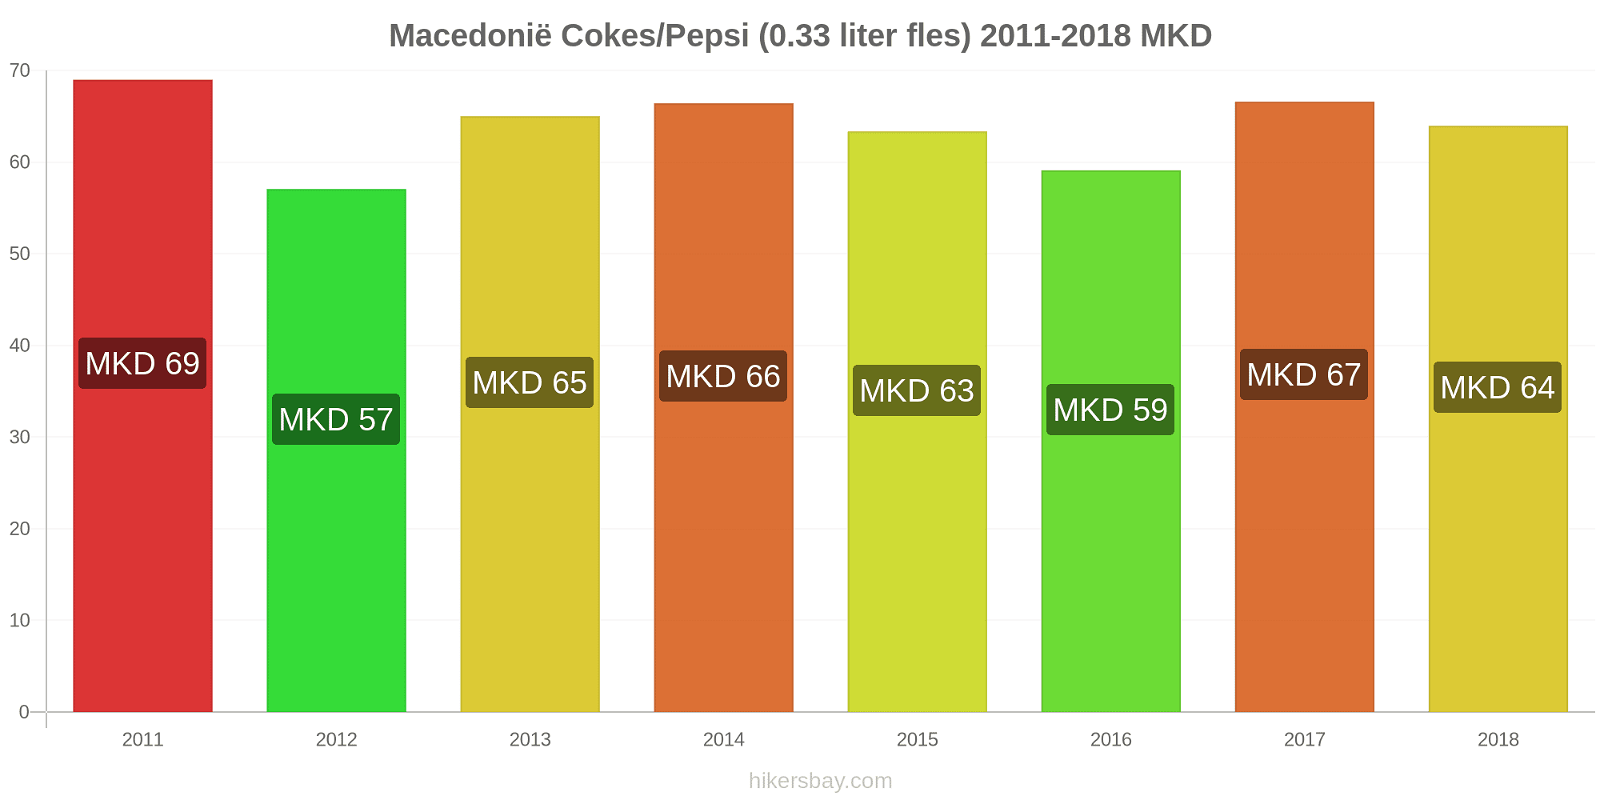 Macedonië prijswijzigingen Coca-Cola/Pepsi (0.33 liter fles) hikersbay.com